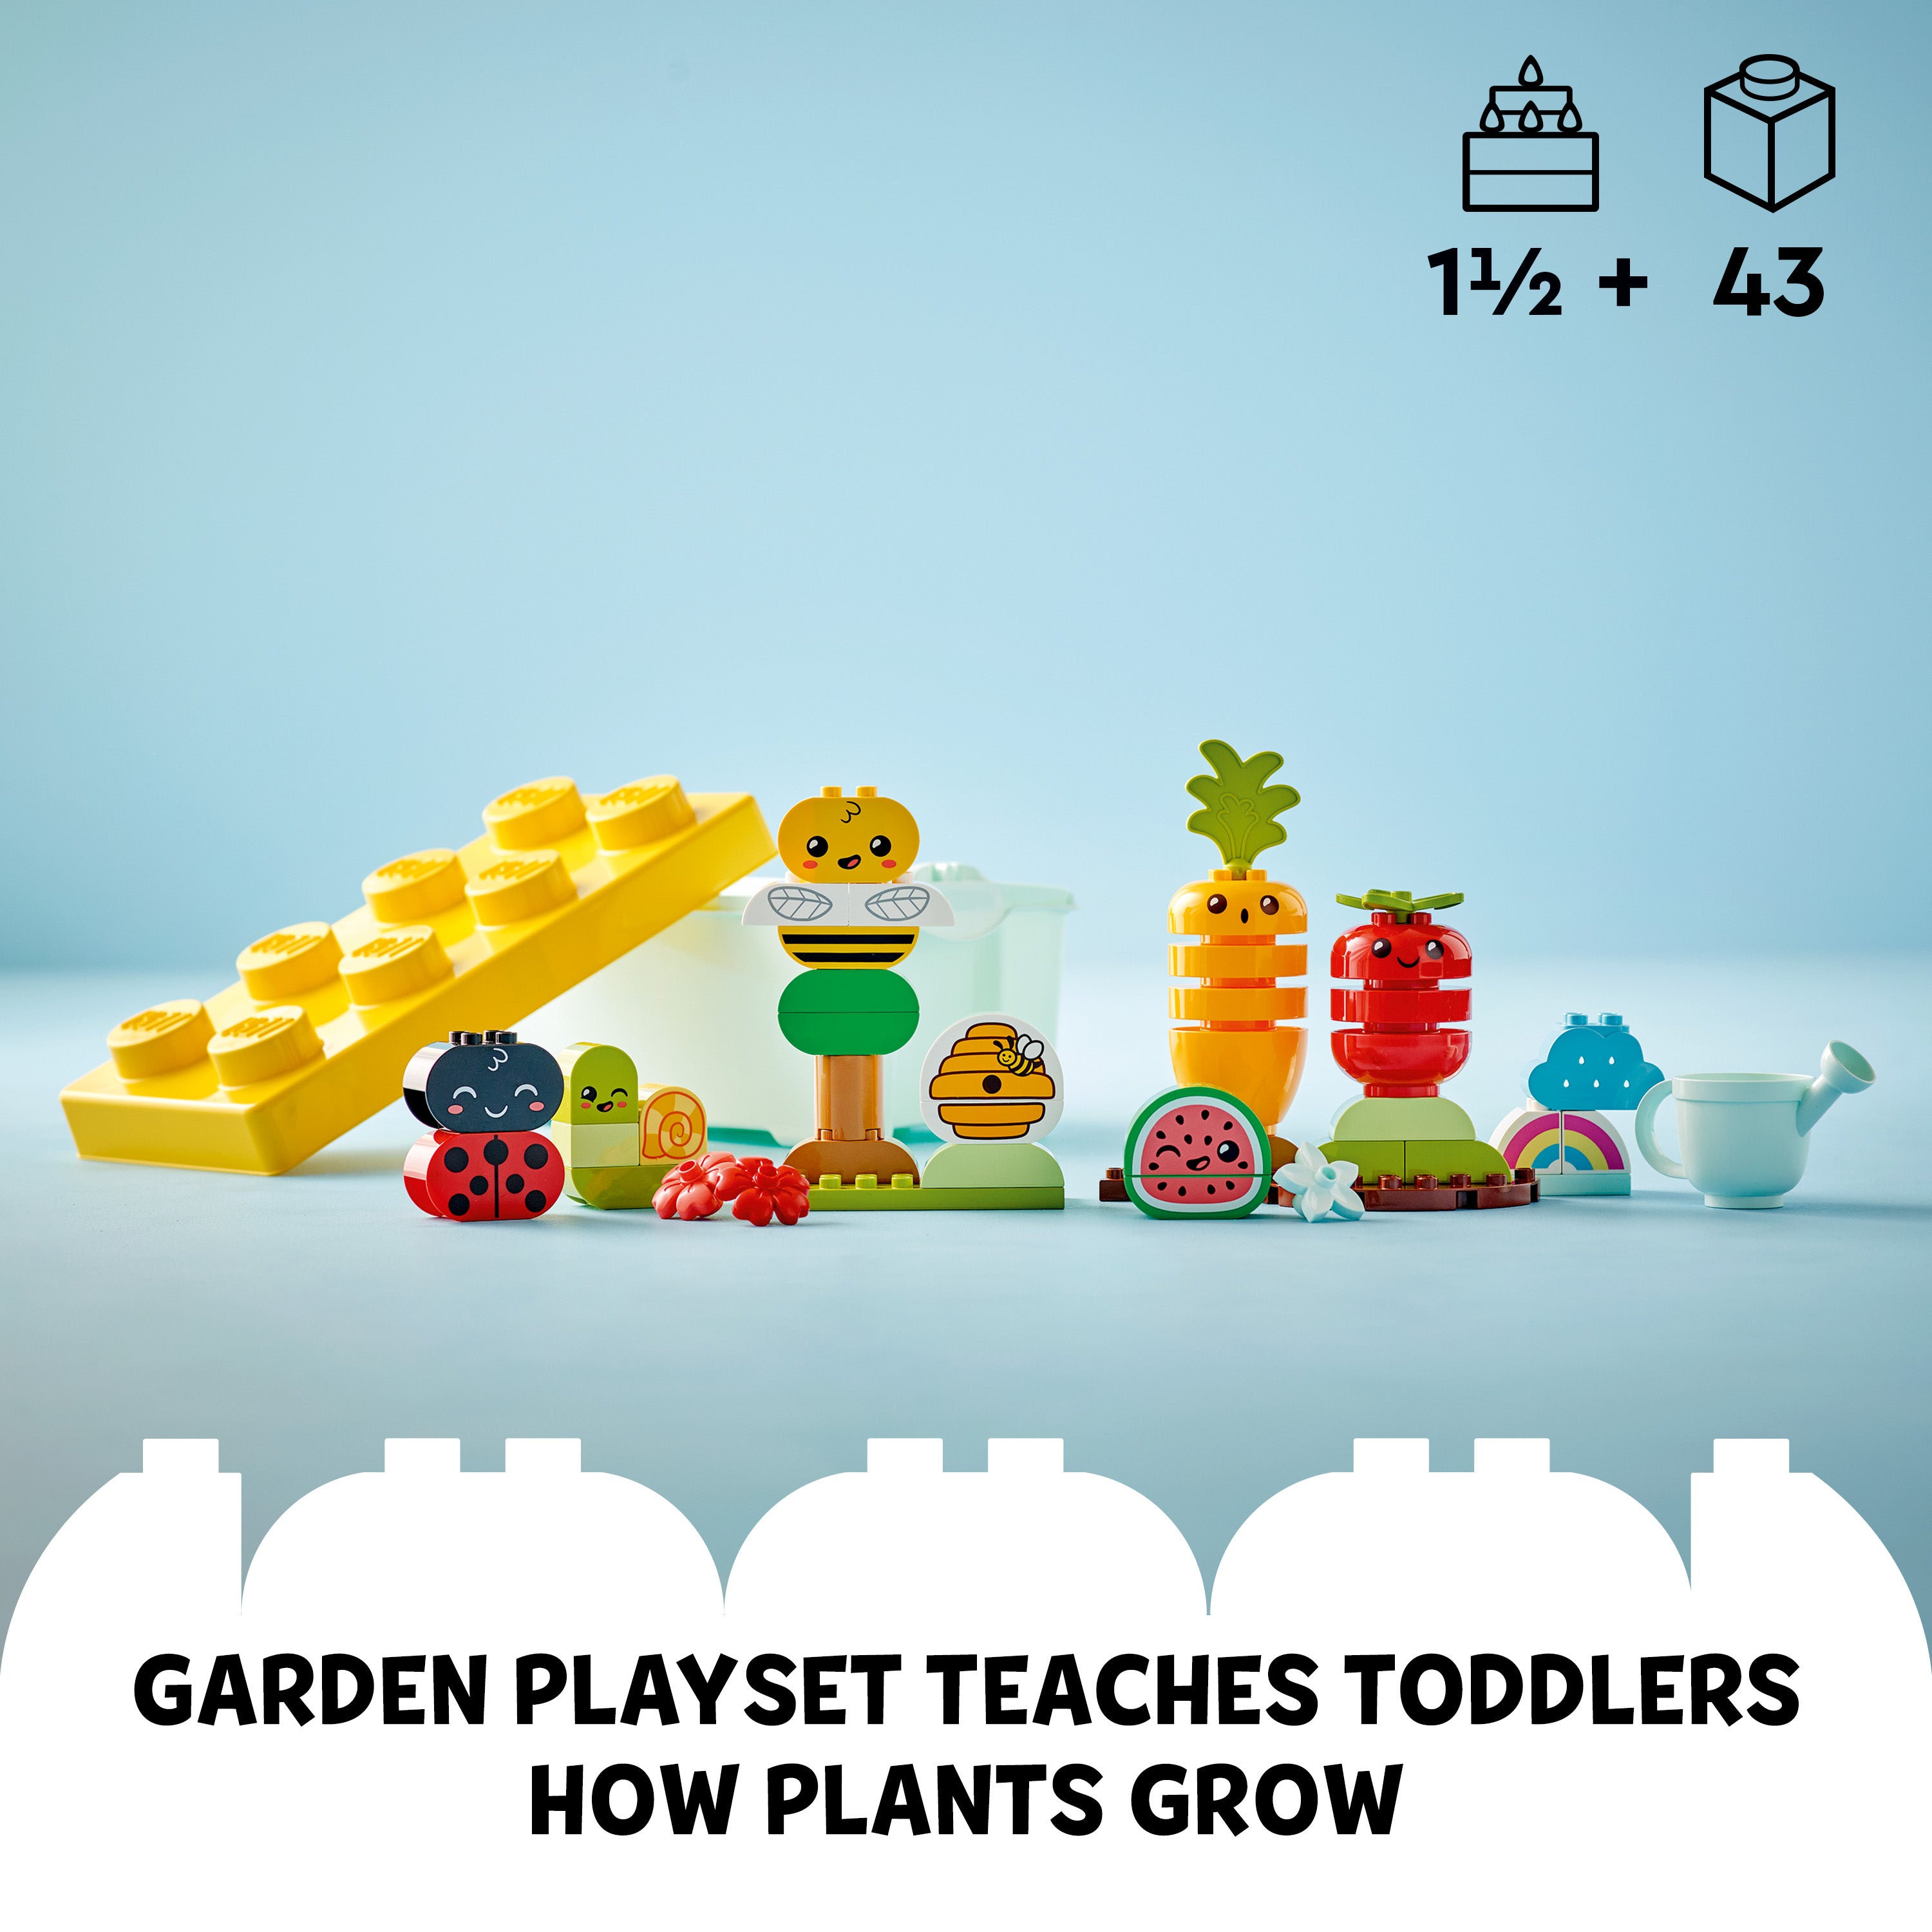 Lego 10984 Organic Garden